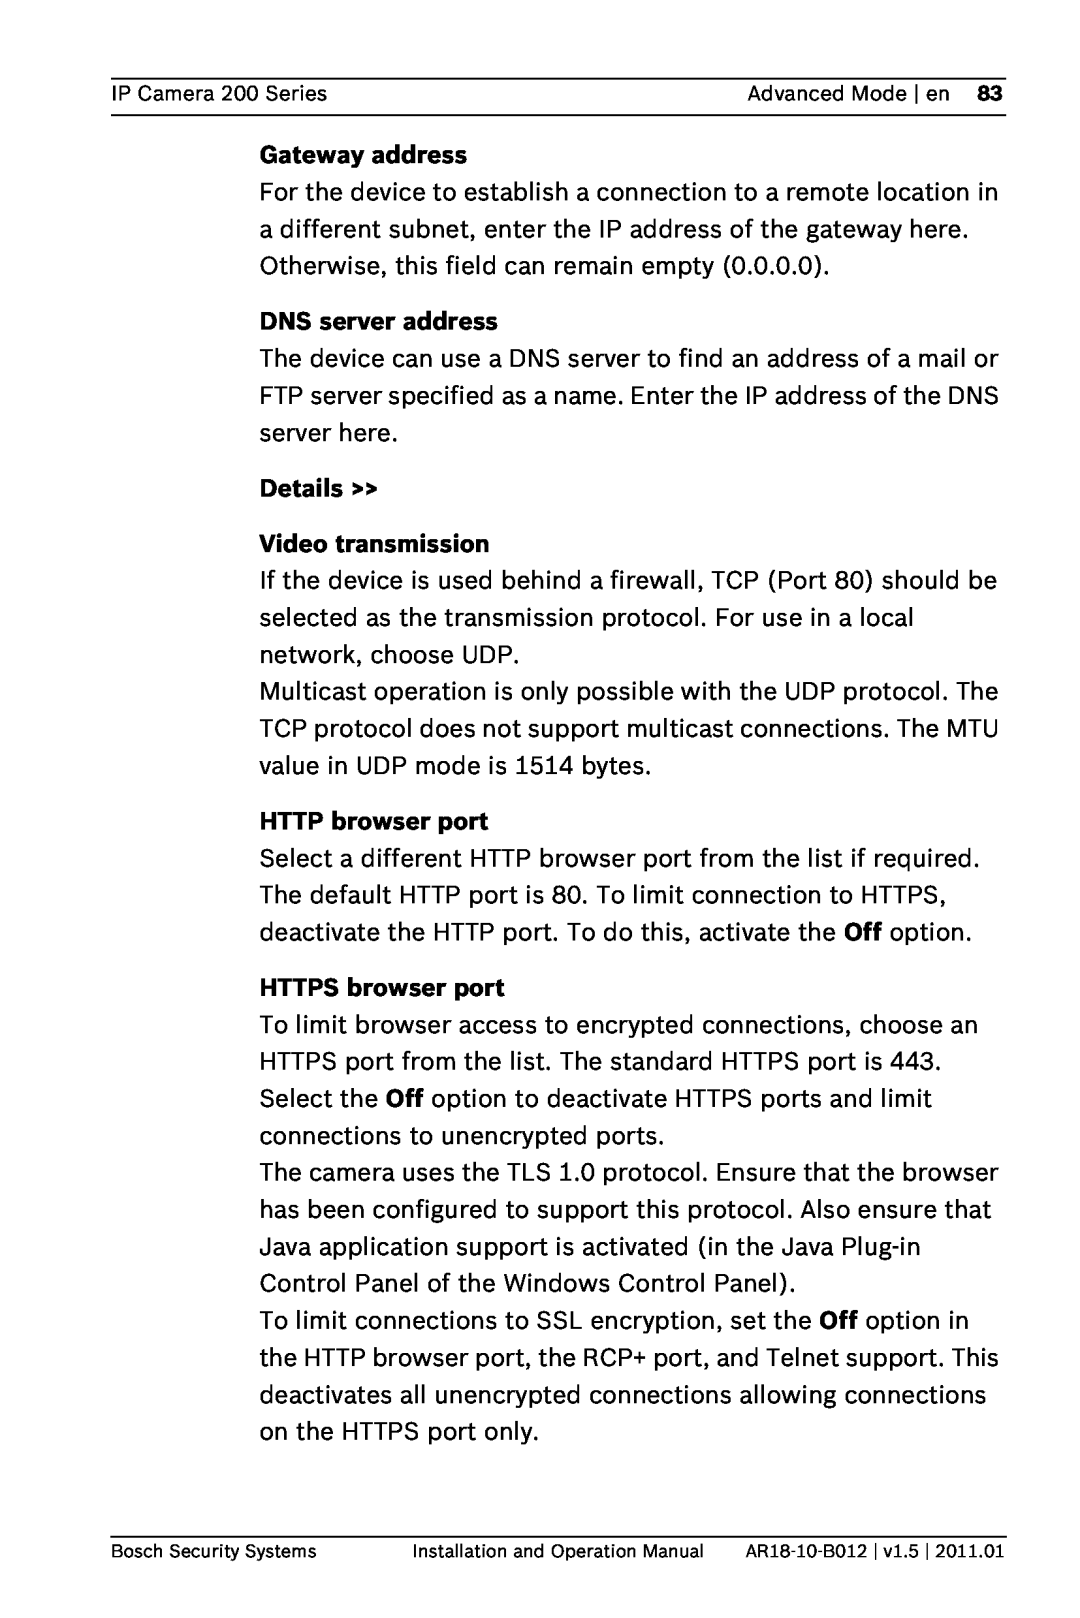 Bosch Appliances NDC-265-P DNS server address, Details Video transmission, HTTP browser port, HTTPS browser port 